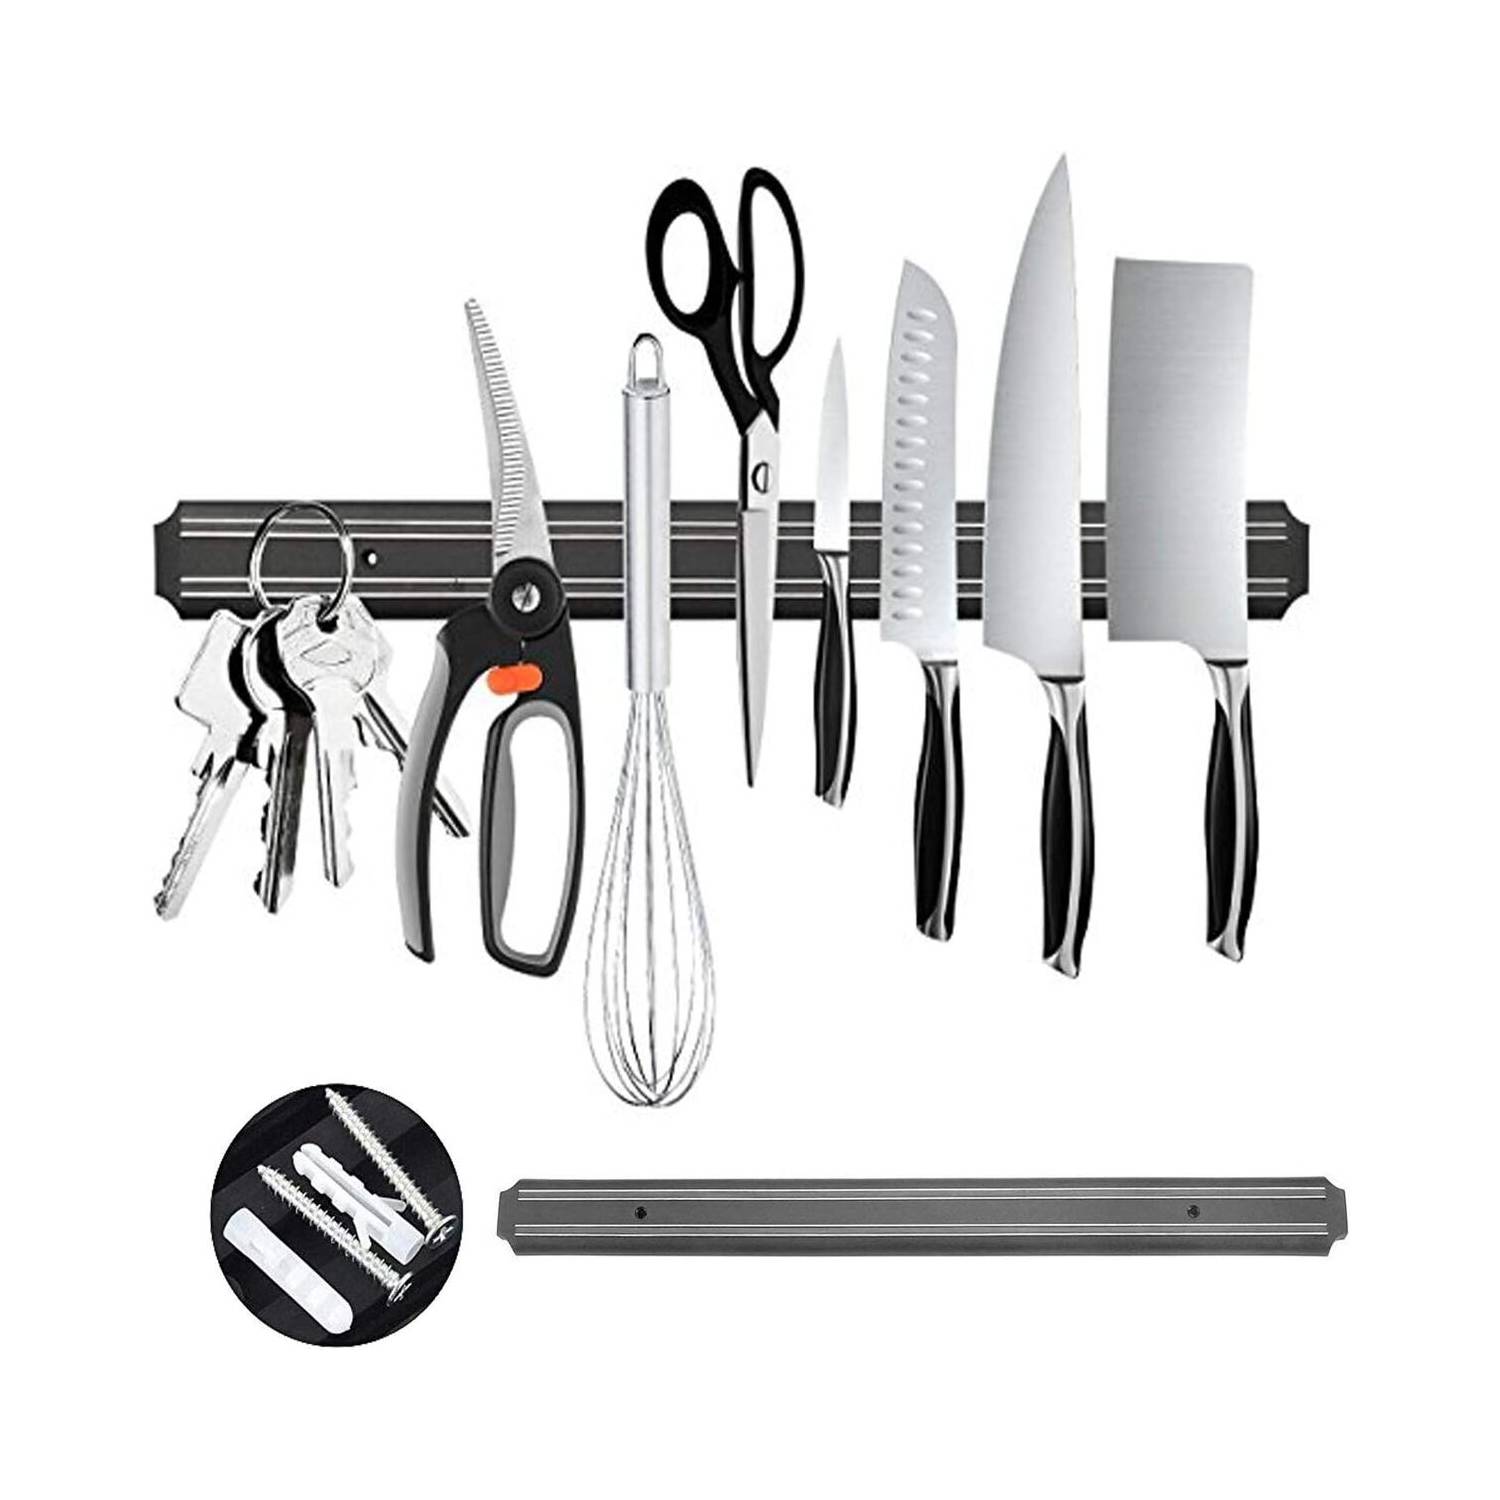 Porta cuchillos magnético de 50cm - Oportunidades Vip Venta por menor y  mayor de productos electrónicos, bazar, libreria, decoración, oficina y